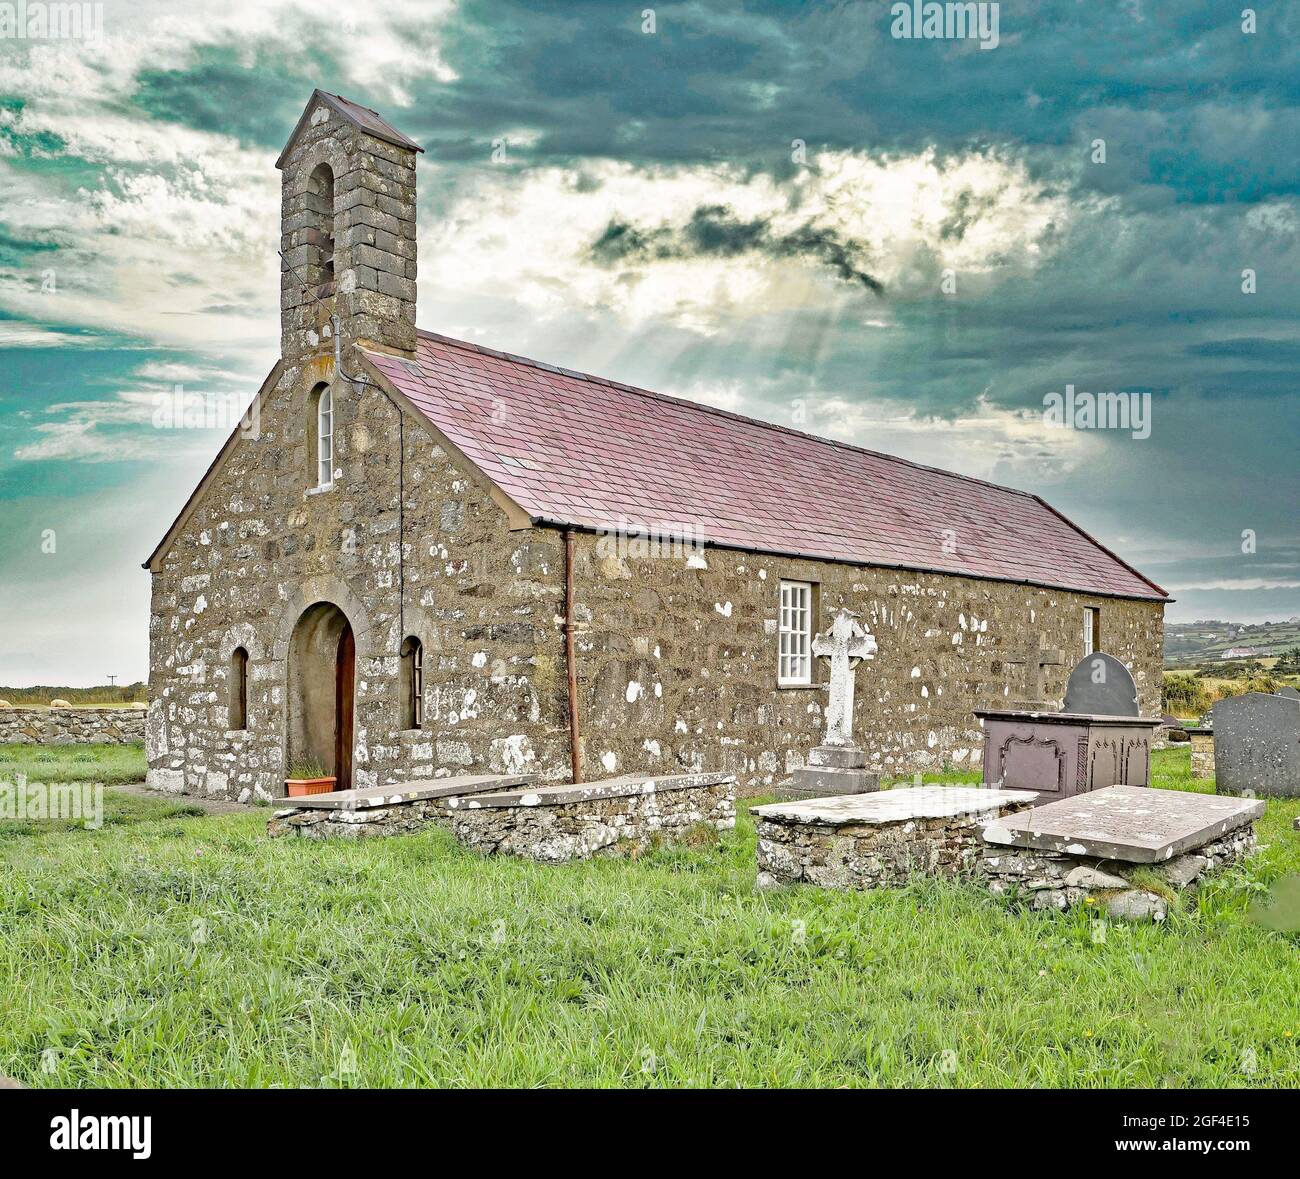 PWLLHELI, REGNO UNITO - 21 ago 2021: Churh di St Maelrhy del XV secolo a Porth Ysgo vicino ad Aberdaron Galles del Nord Foto Stock